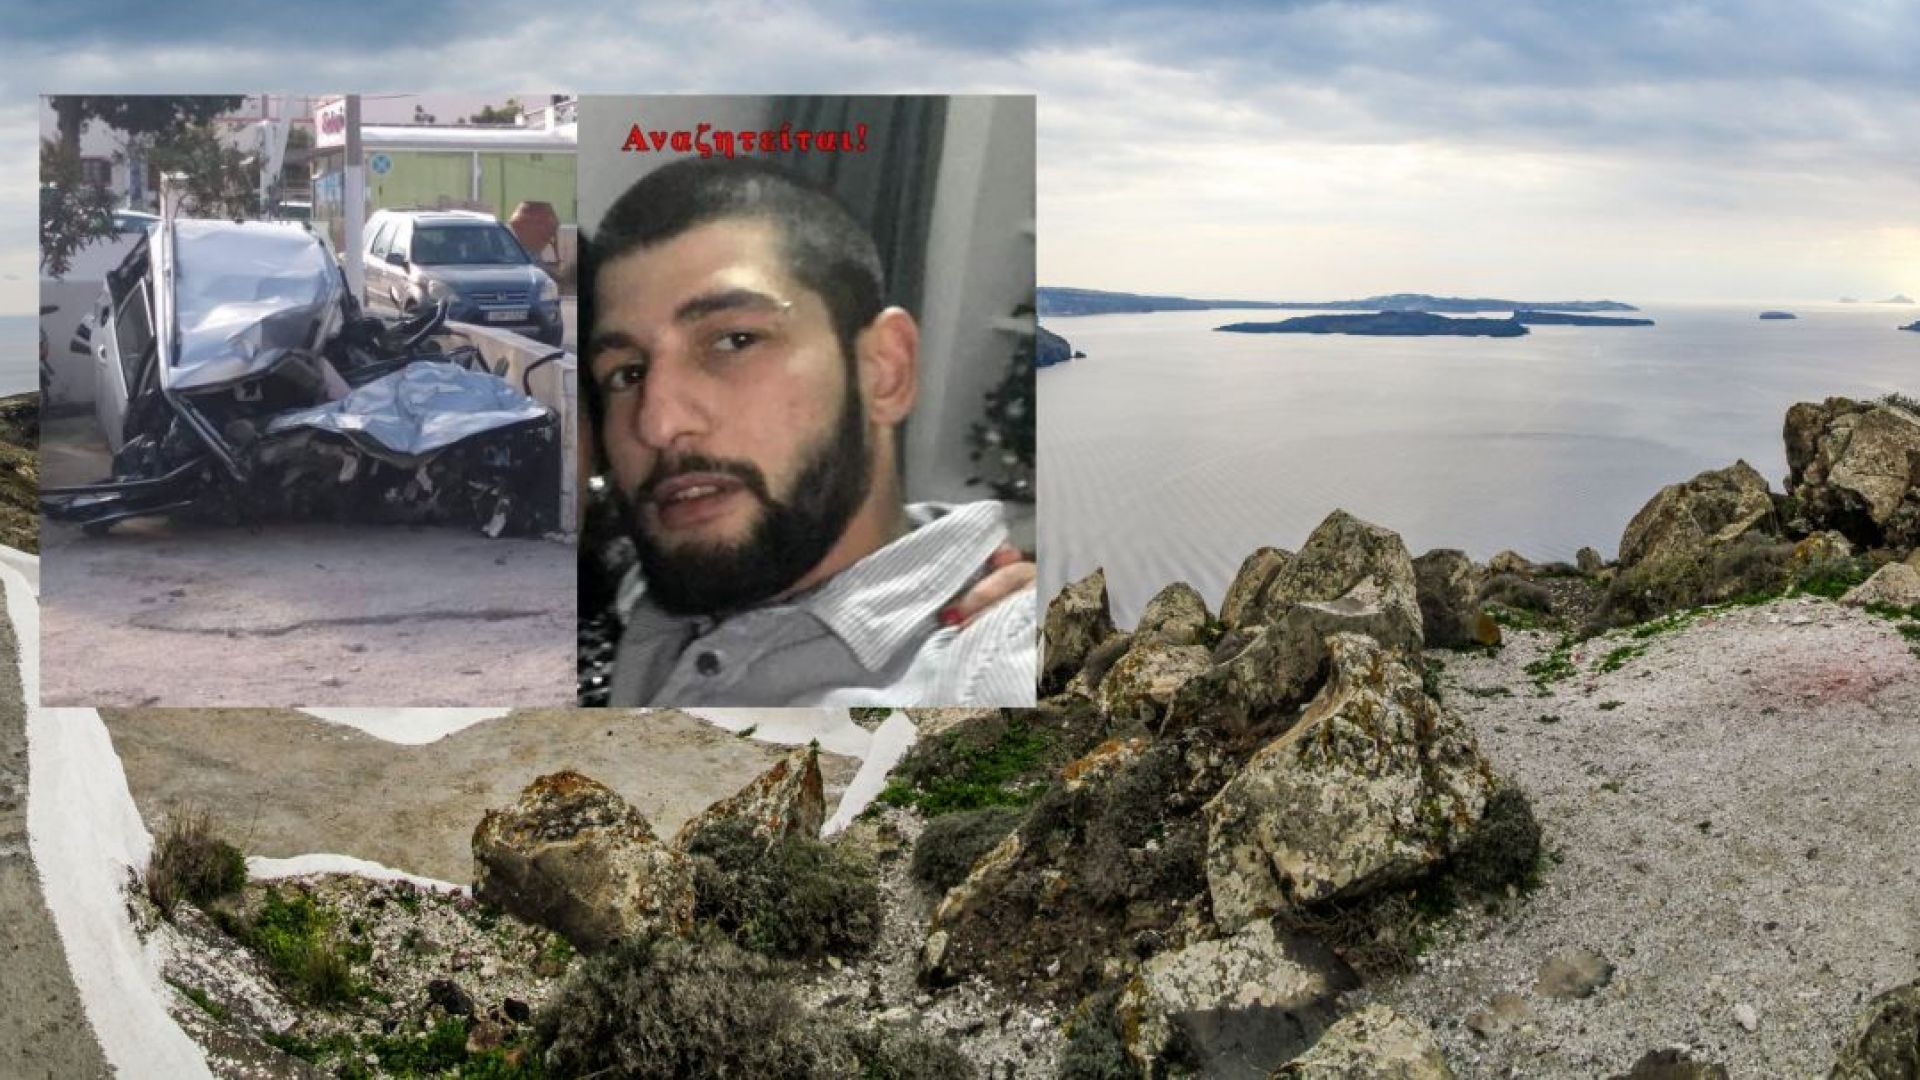 Гръцката полиция откри тялото на 27 годишния българин Йордан Станев Динев